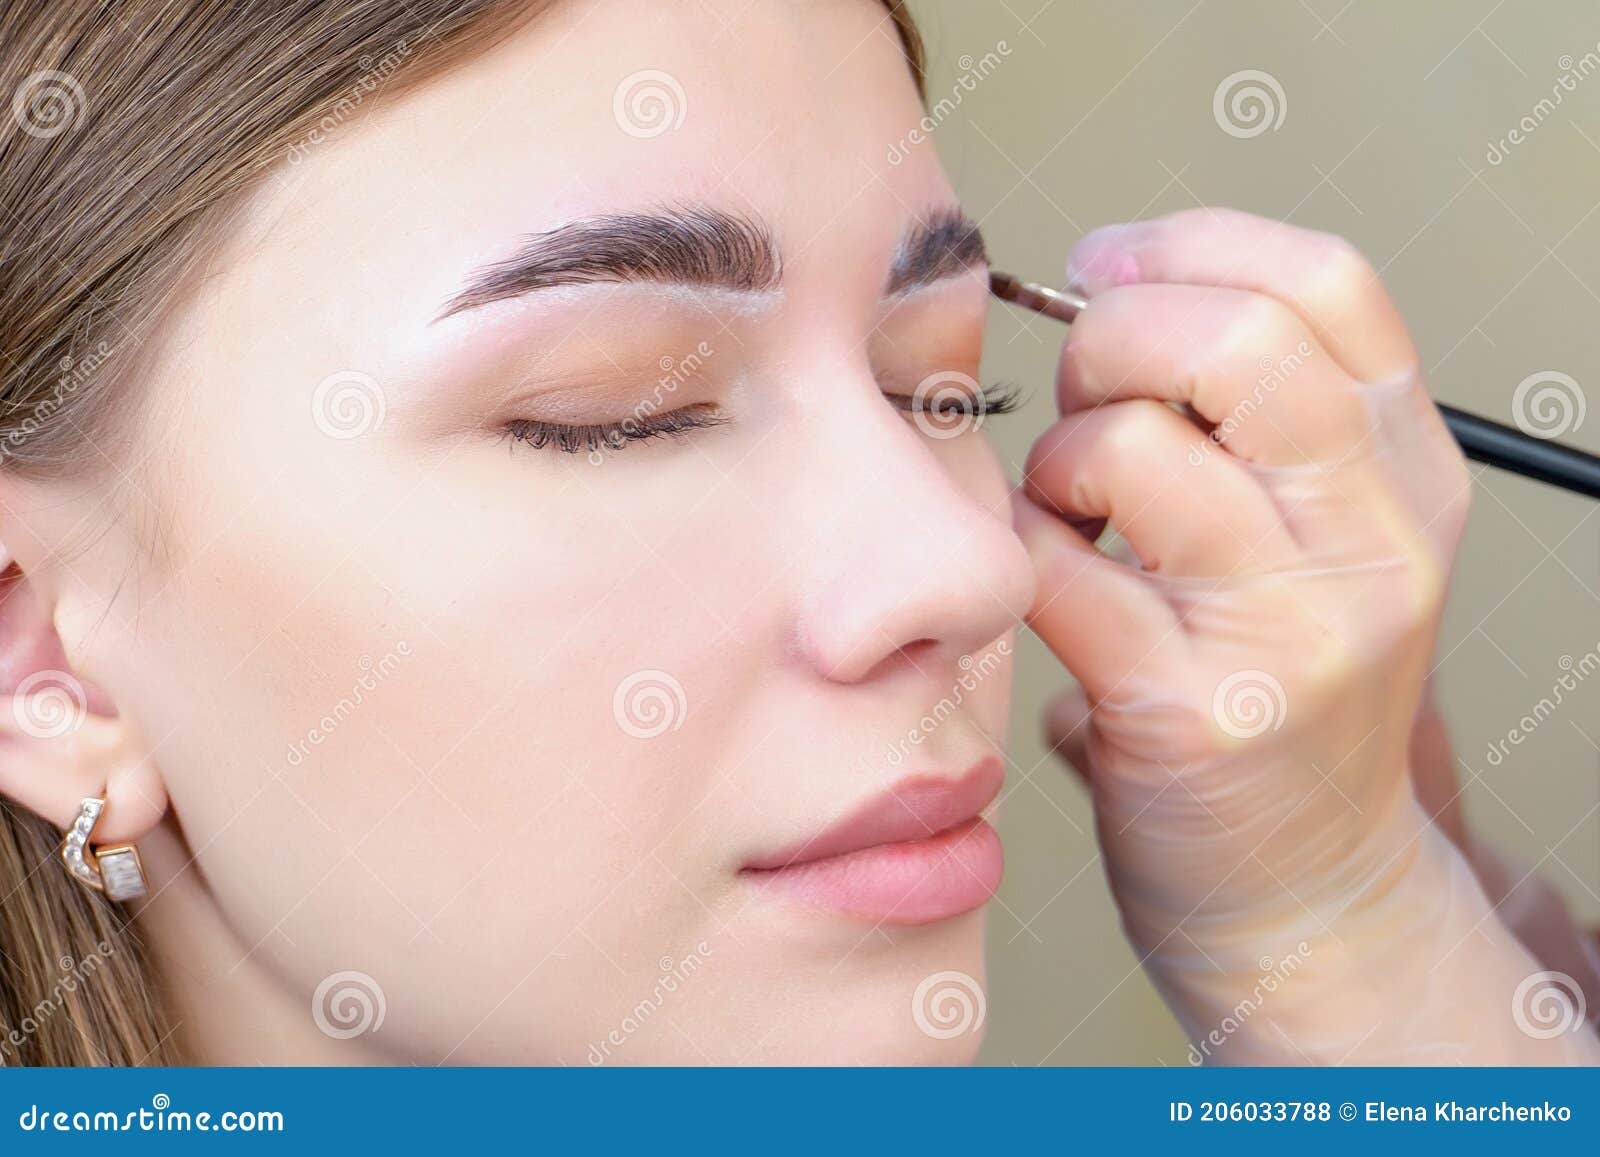 eyebrow coloring. woman applying brow tint with makeup brush closeup